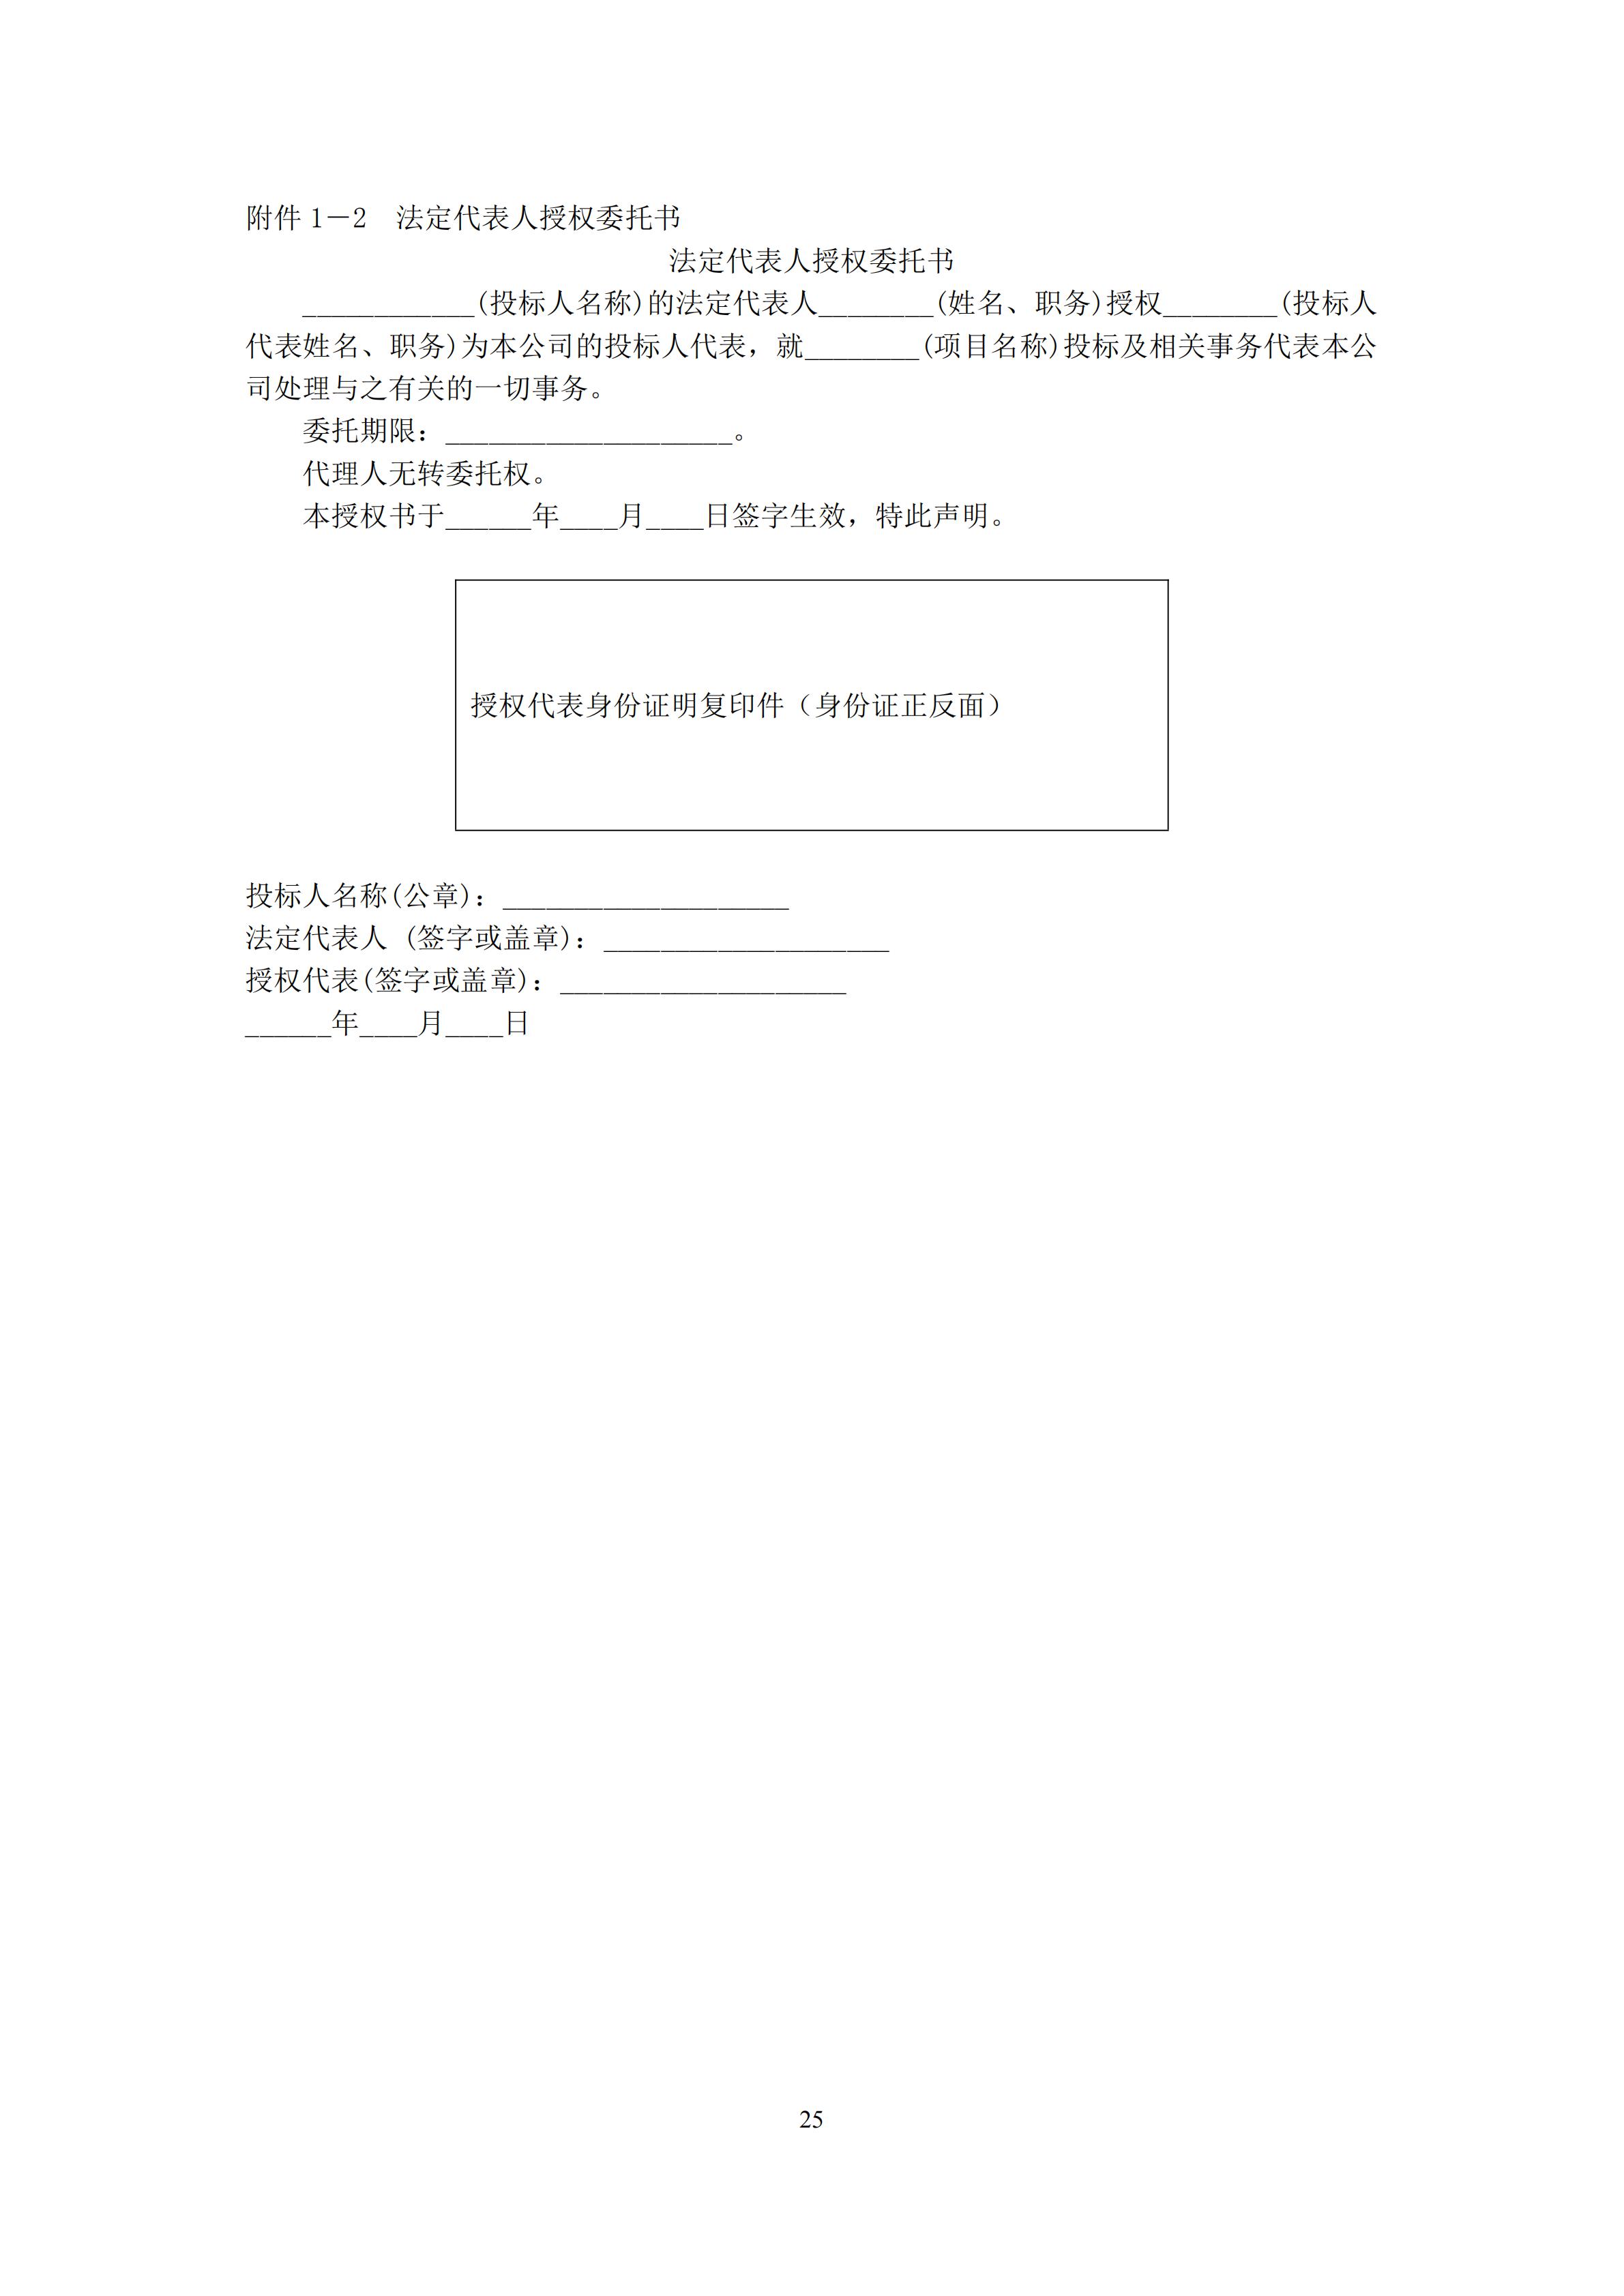 2022年江西省大众跆拳道系列赛电子护具租赁和竞赛系统服务项目招标文件_24.jpg